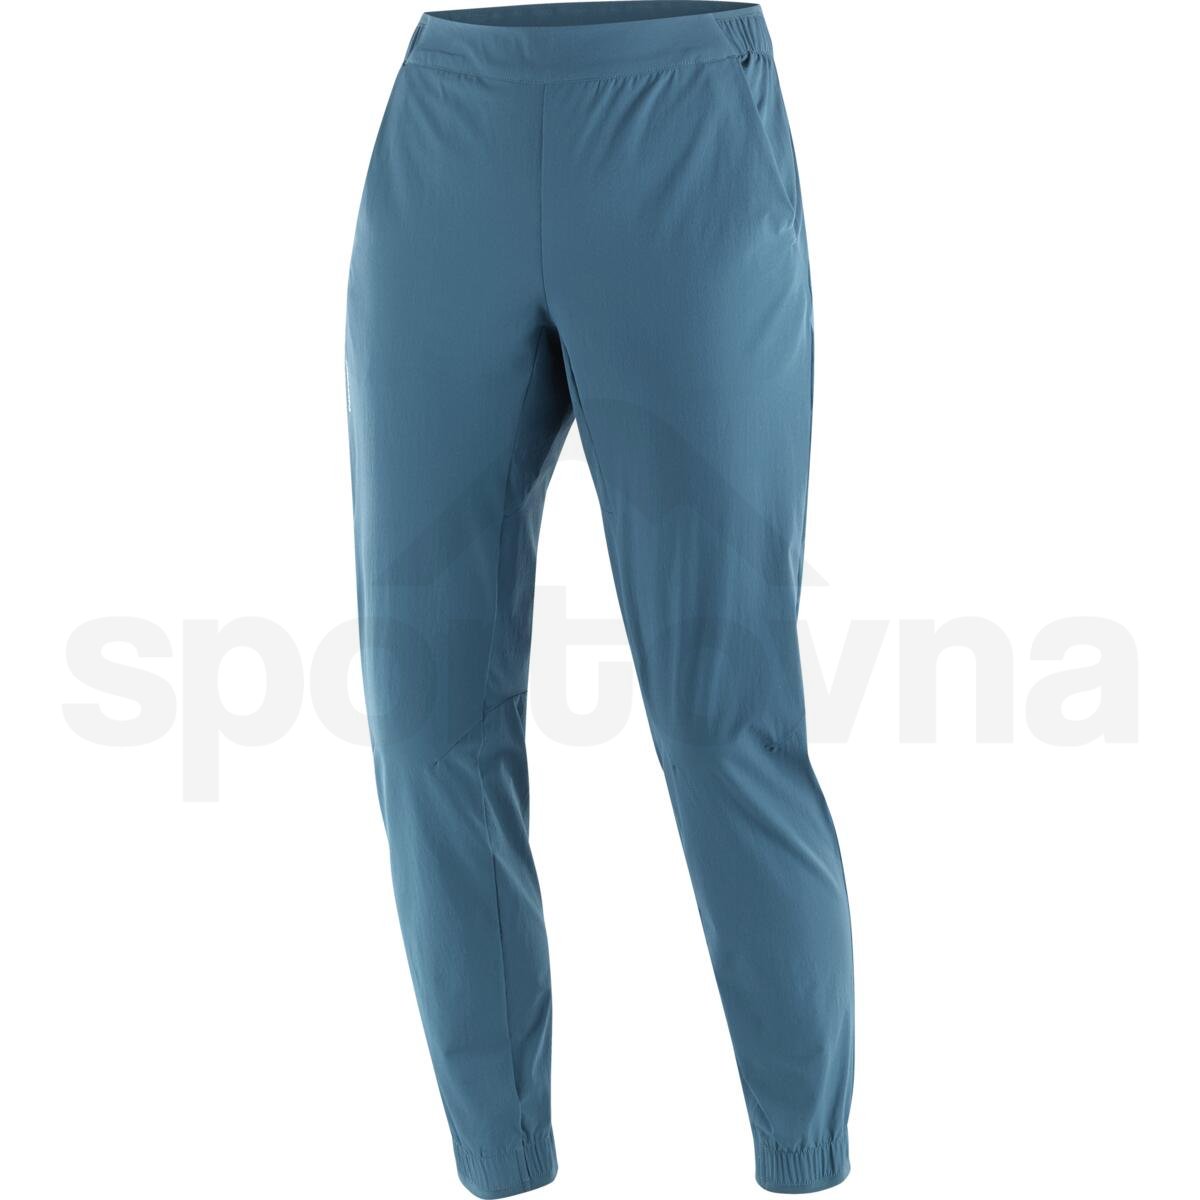 Kalhoty Salomon Wayfarer Ease Pants W - modrá